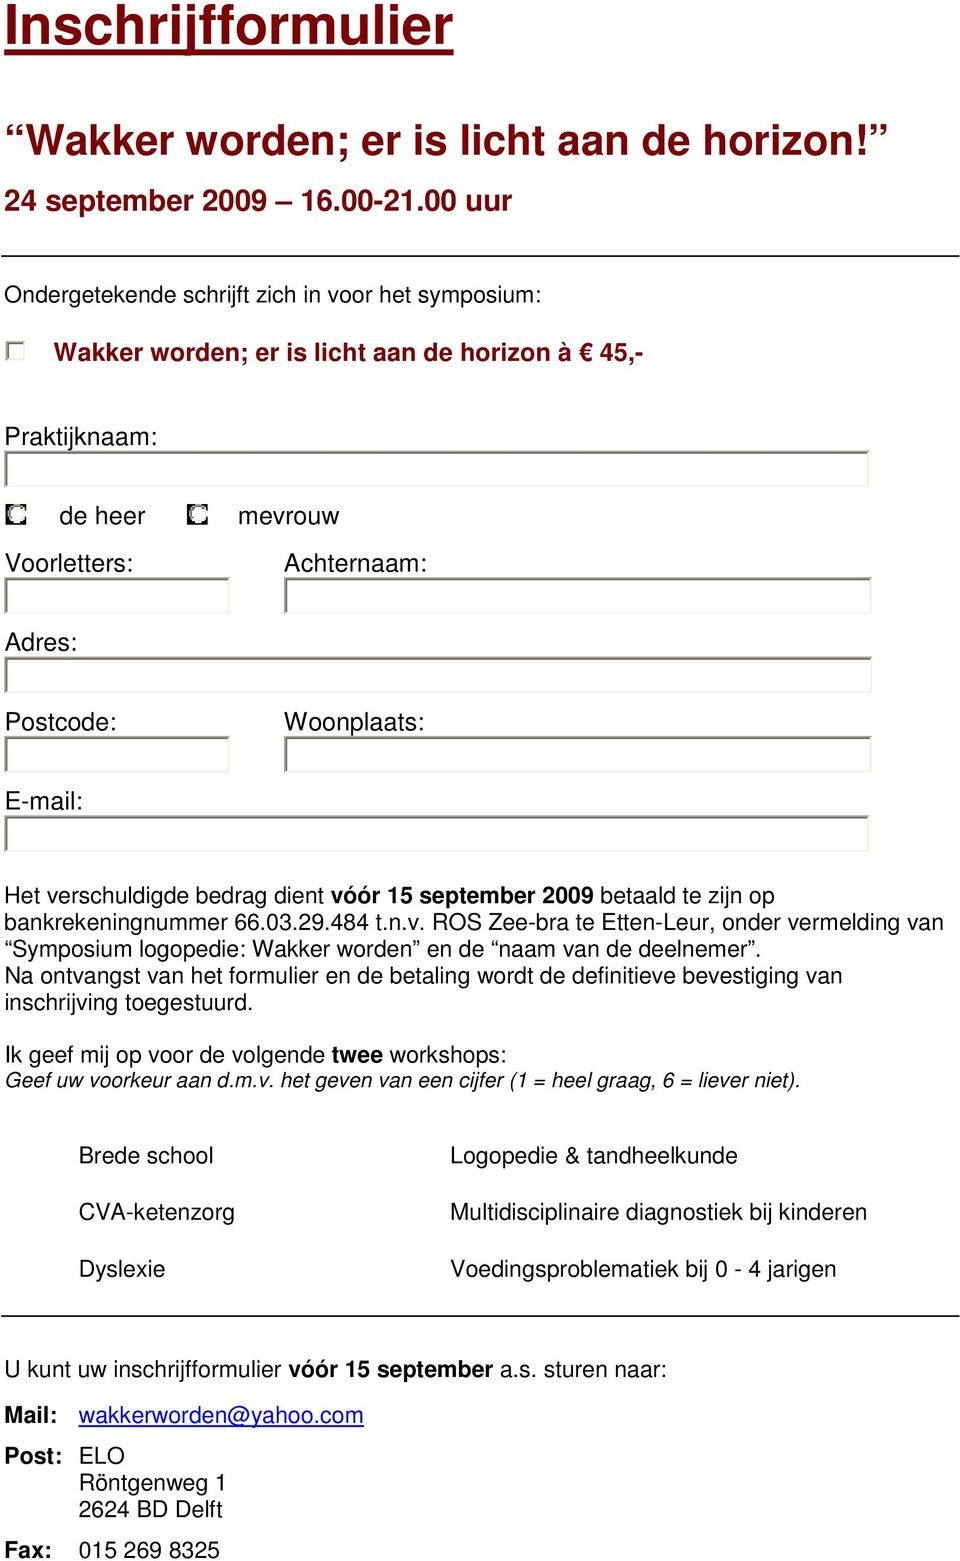 Het verschuldigde bedrag dient vóór 15 september 2009 betaald te zijn op bankrekeningnummer 66.03.29.484 t.n.v. ROS Zee-bra te Etten-Leur, onder vermelding van Symposium logopedie: Wakker worden en de naam van de deelnemer.